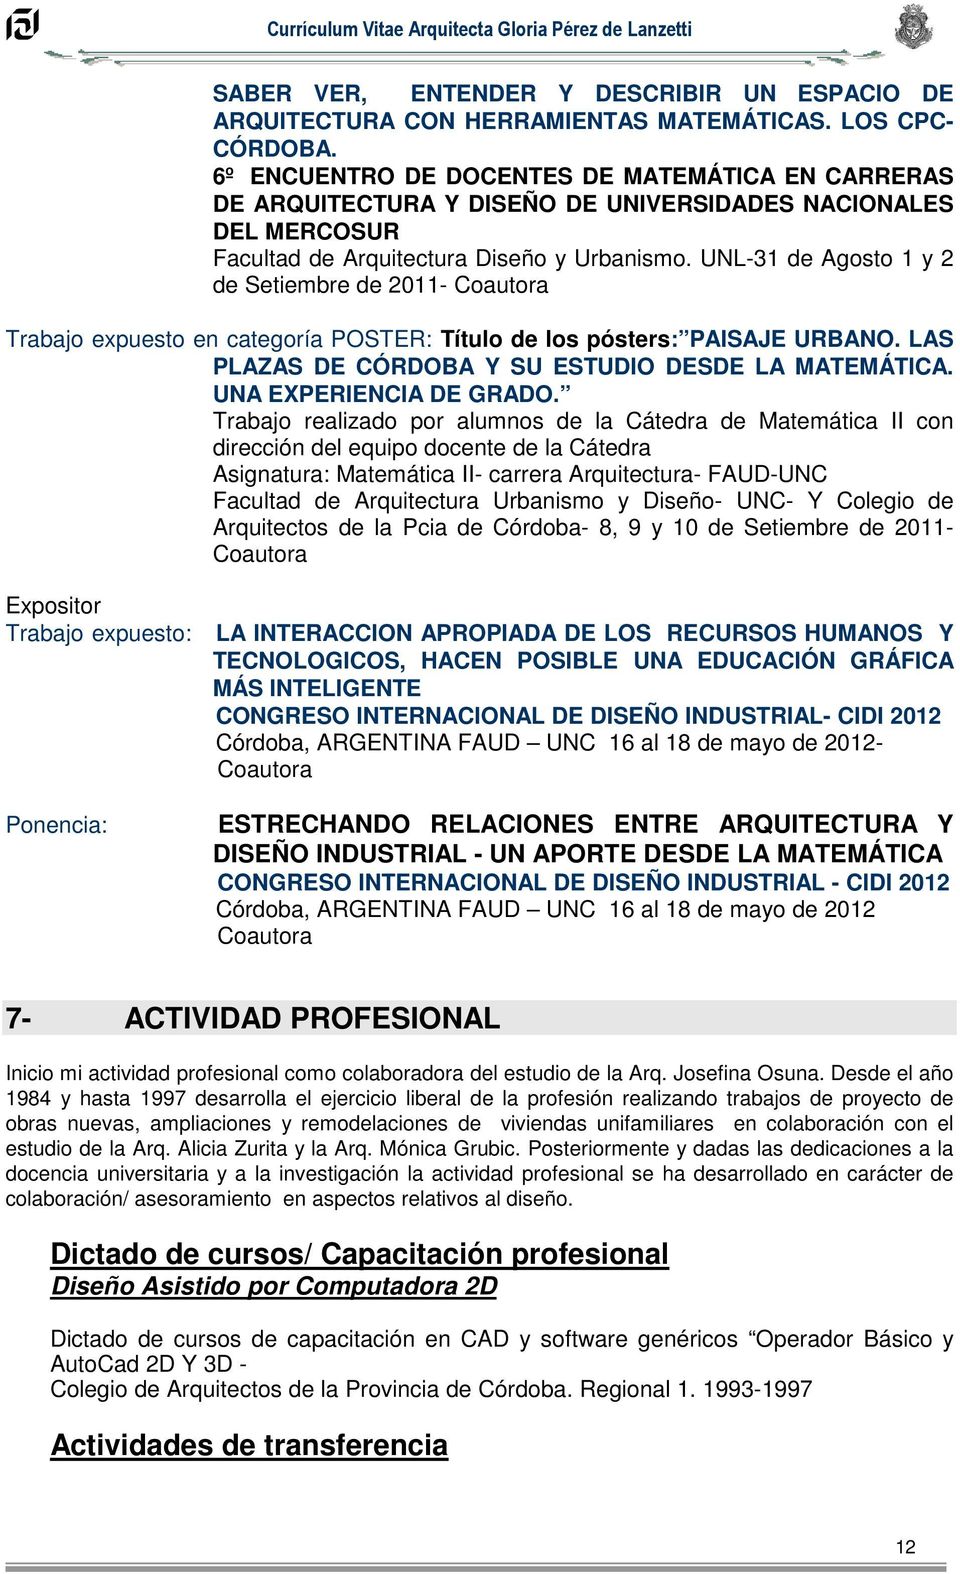 Curriculum Vitae Arquitecta Gloria Perez De Lanzetti Pdf